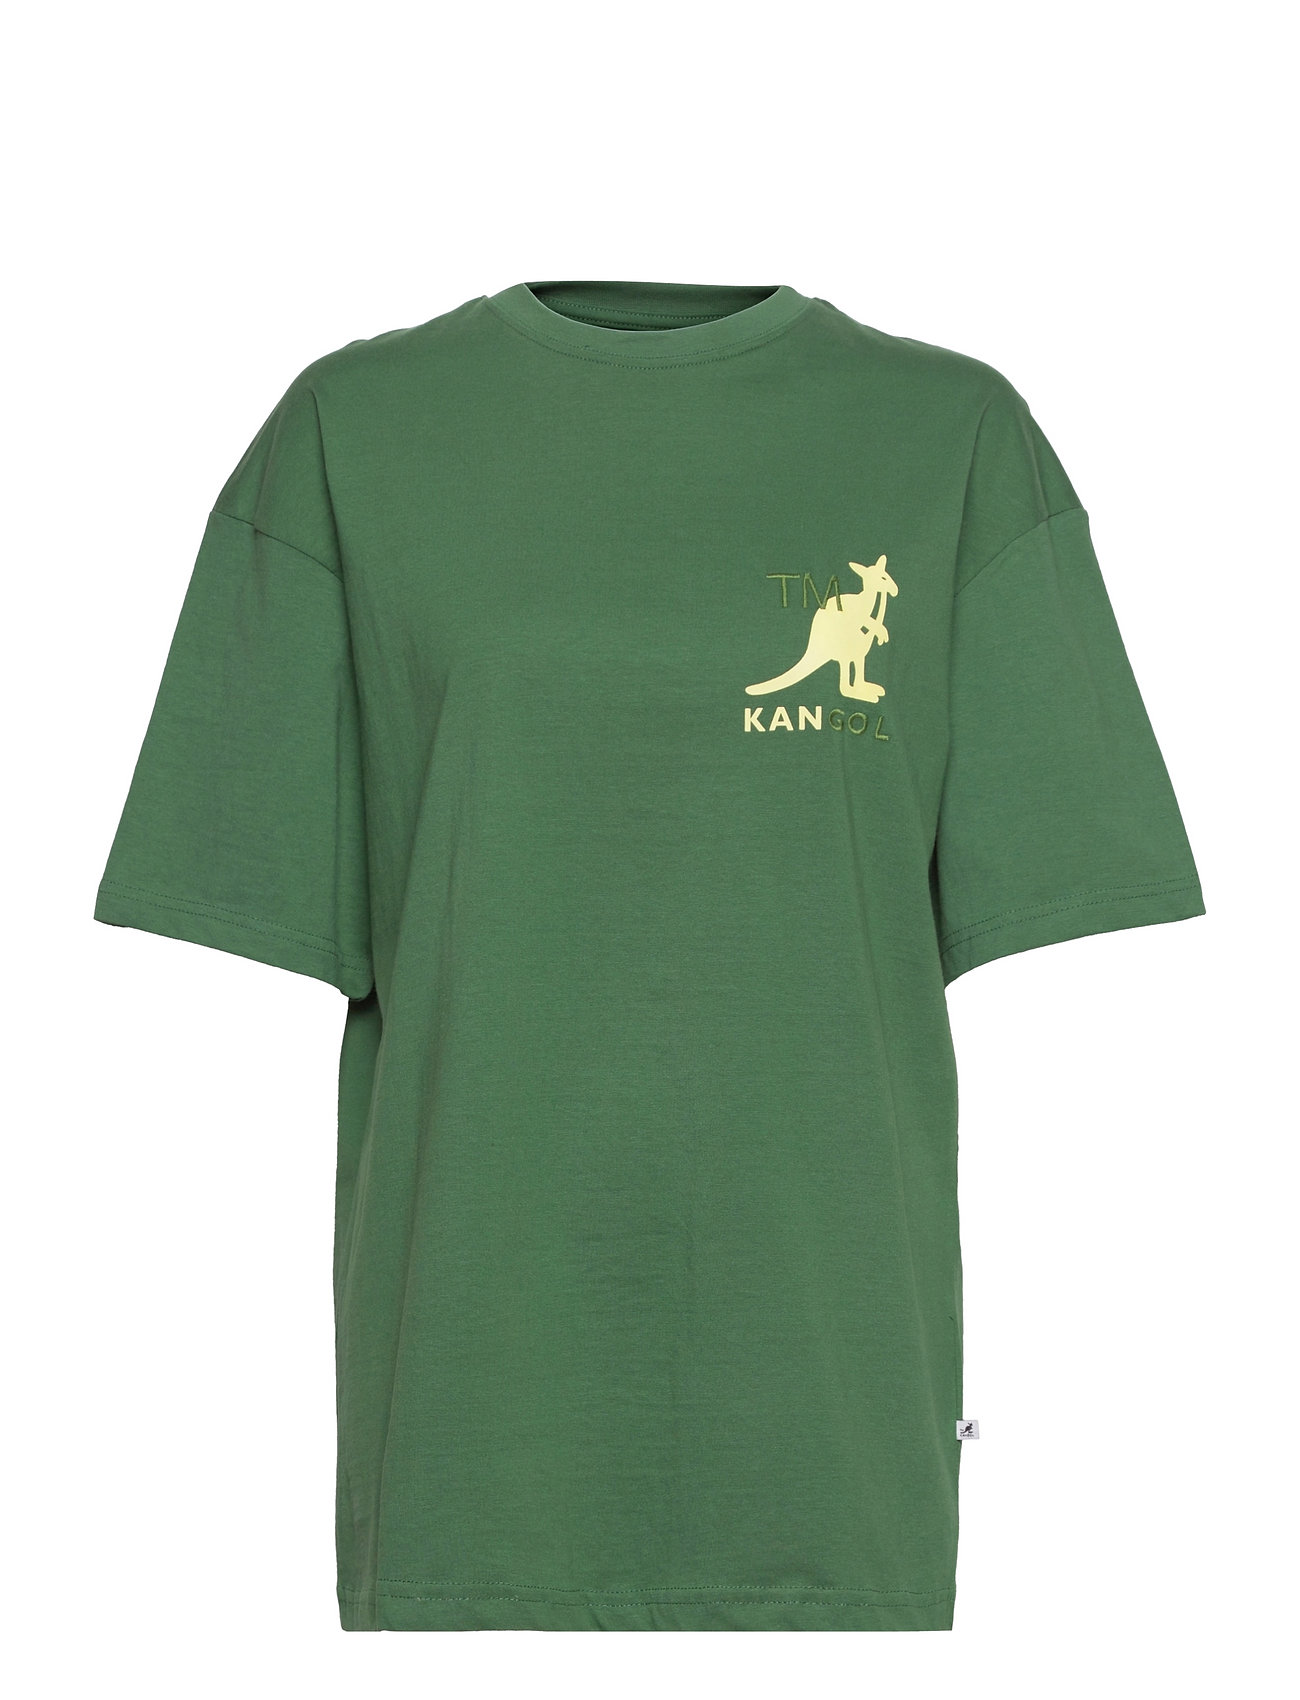 Kangol Kg Harlem M05 T-shirt T-shirts - Boozt.com